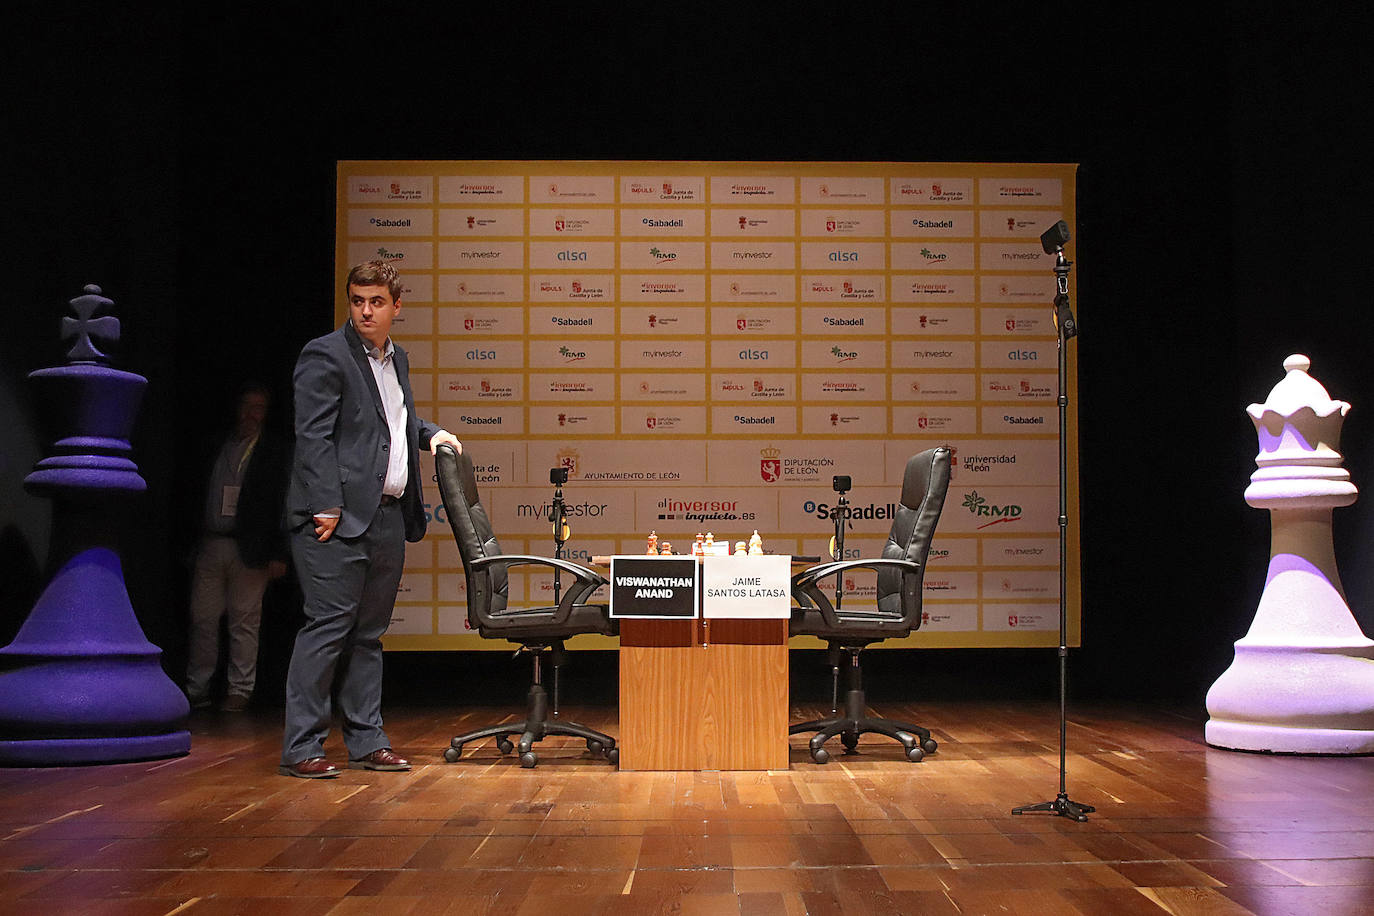 El nueve veces campeón Vishy Anand se mide al leonés Jaime Santos en la primera semifinal del Magistral